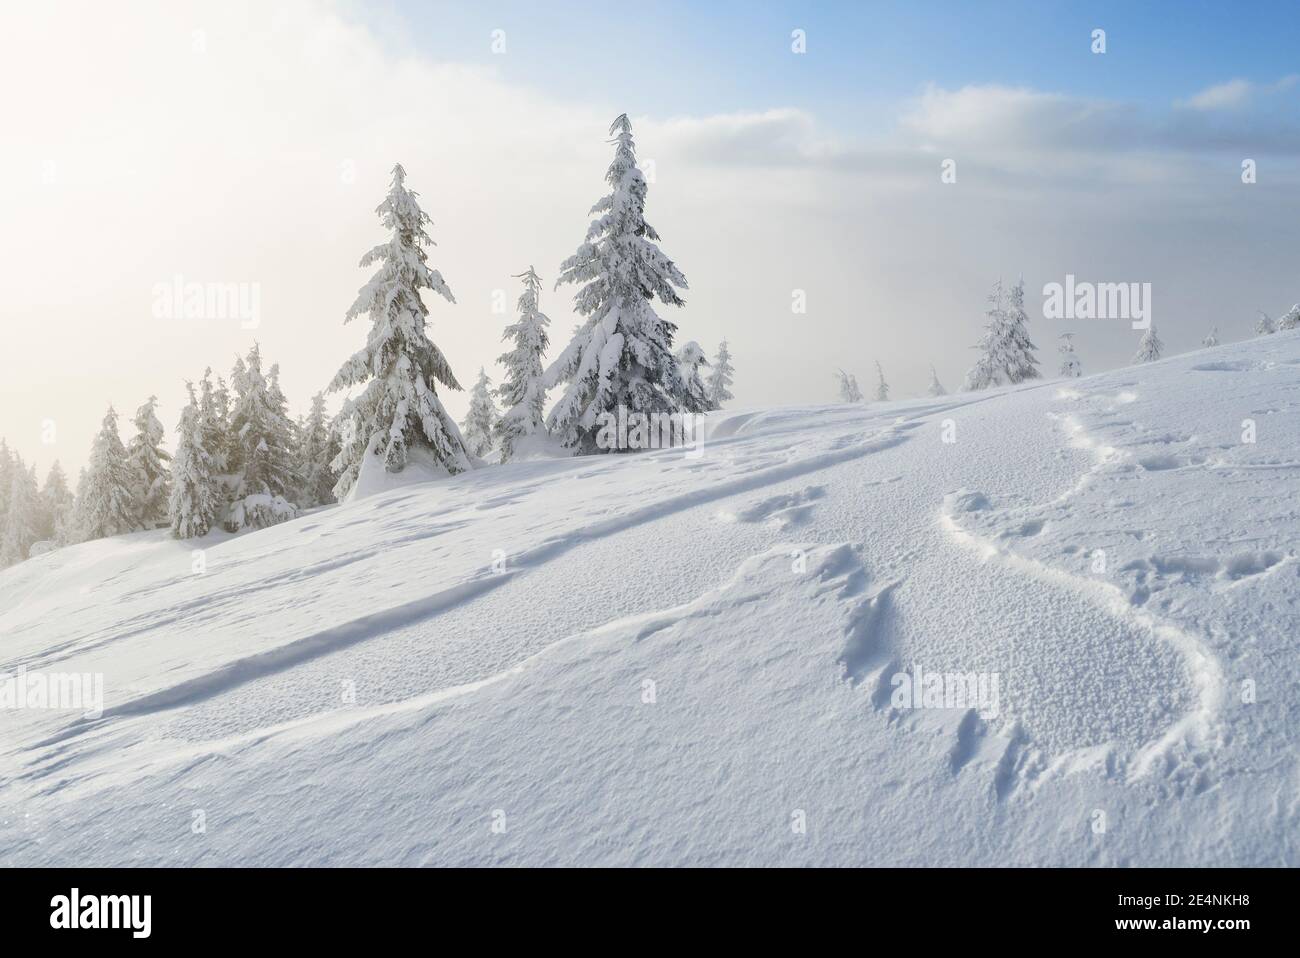 Paysage d'hiver avec des sapins enneigés et des dérives de neige après un blizzard dans les montagnes Banque D'Images